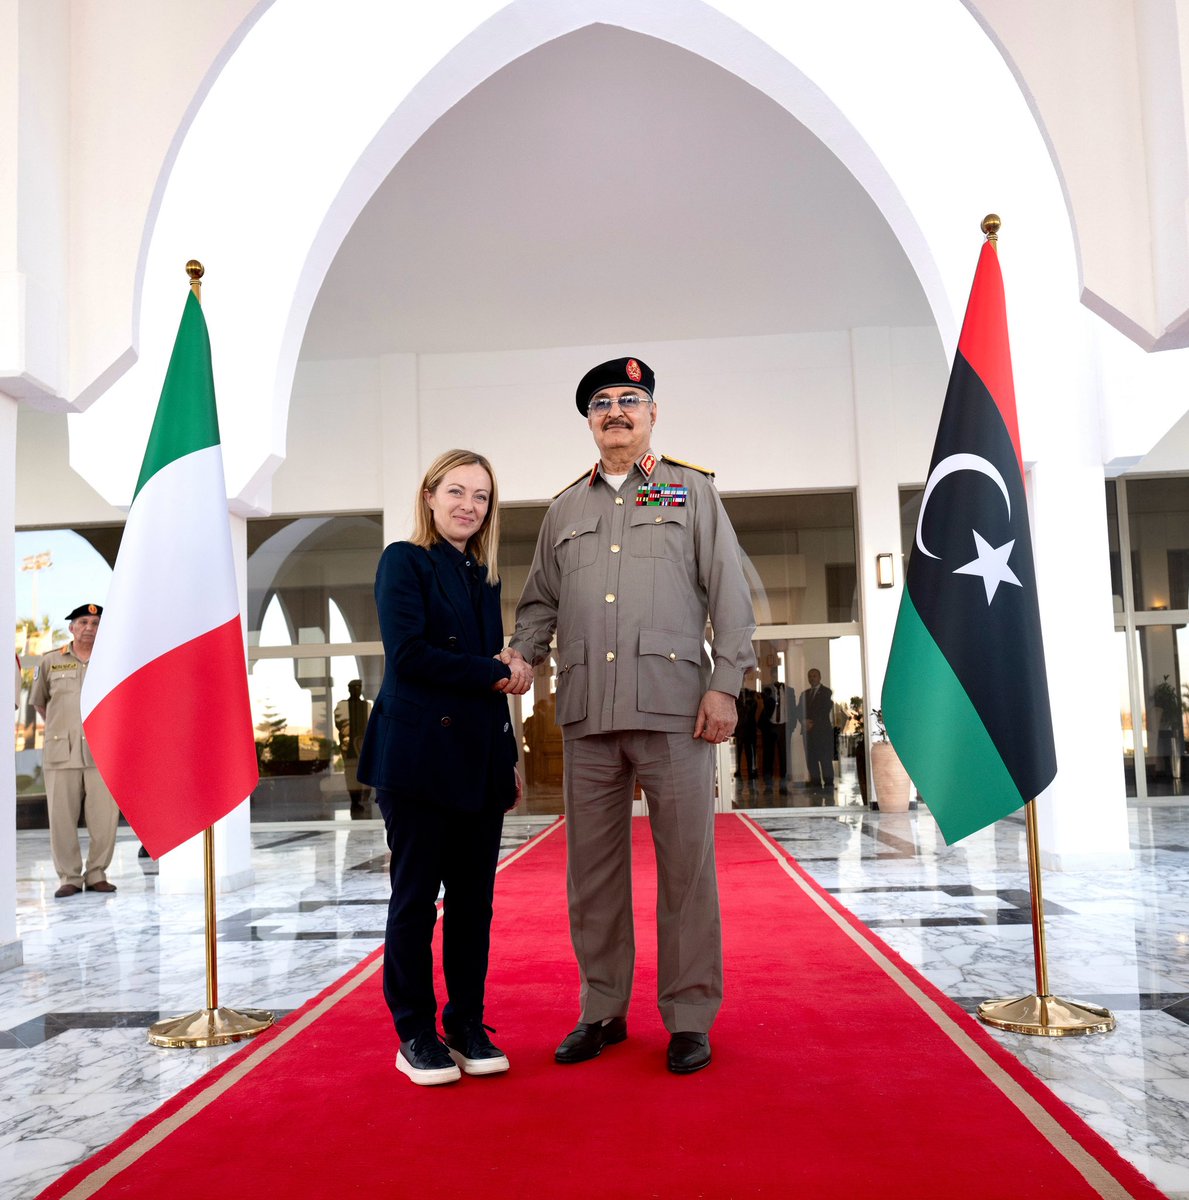 Visita in #Libia del Presidente del Consiglio, Giorgia Meloni. 

Maggiori info👇
governo.it/it/articolo/vi…